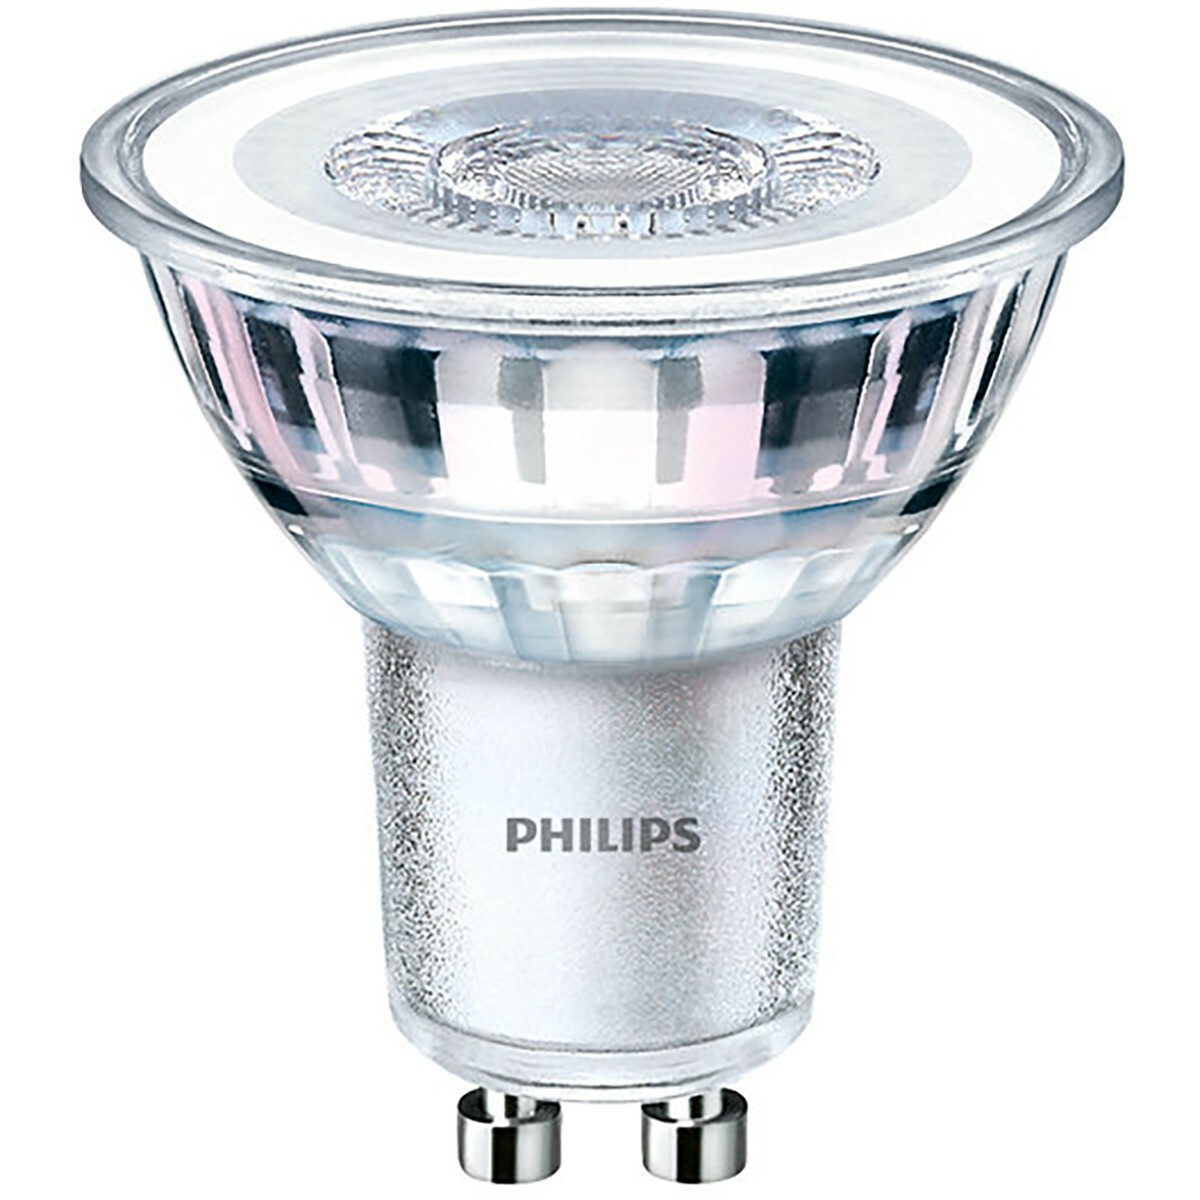 Een centrale tool die een belangrijke rol speelt Grootte kubiek Philips Corepro - LED Spot GU10 - 5W - Dimbaar - 2700k Warm Wit - Philips  Inbouwspot GU10 LED Lamp - PAR16 - Corepro 827 36D - 350 lumen | BES LED